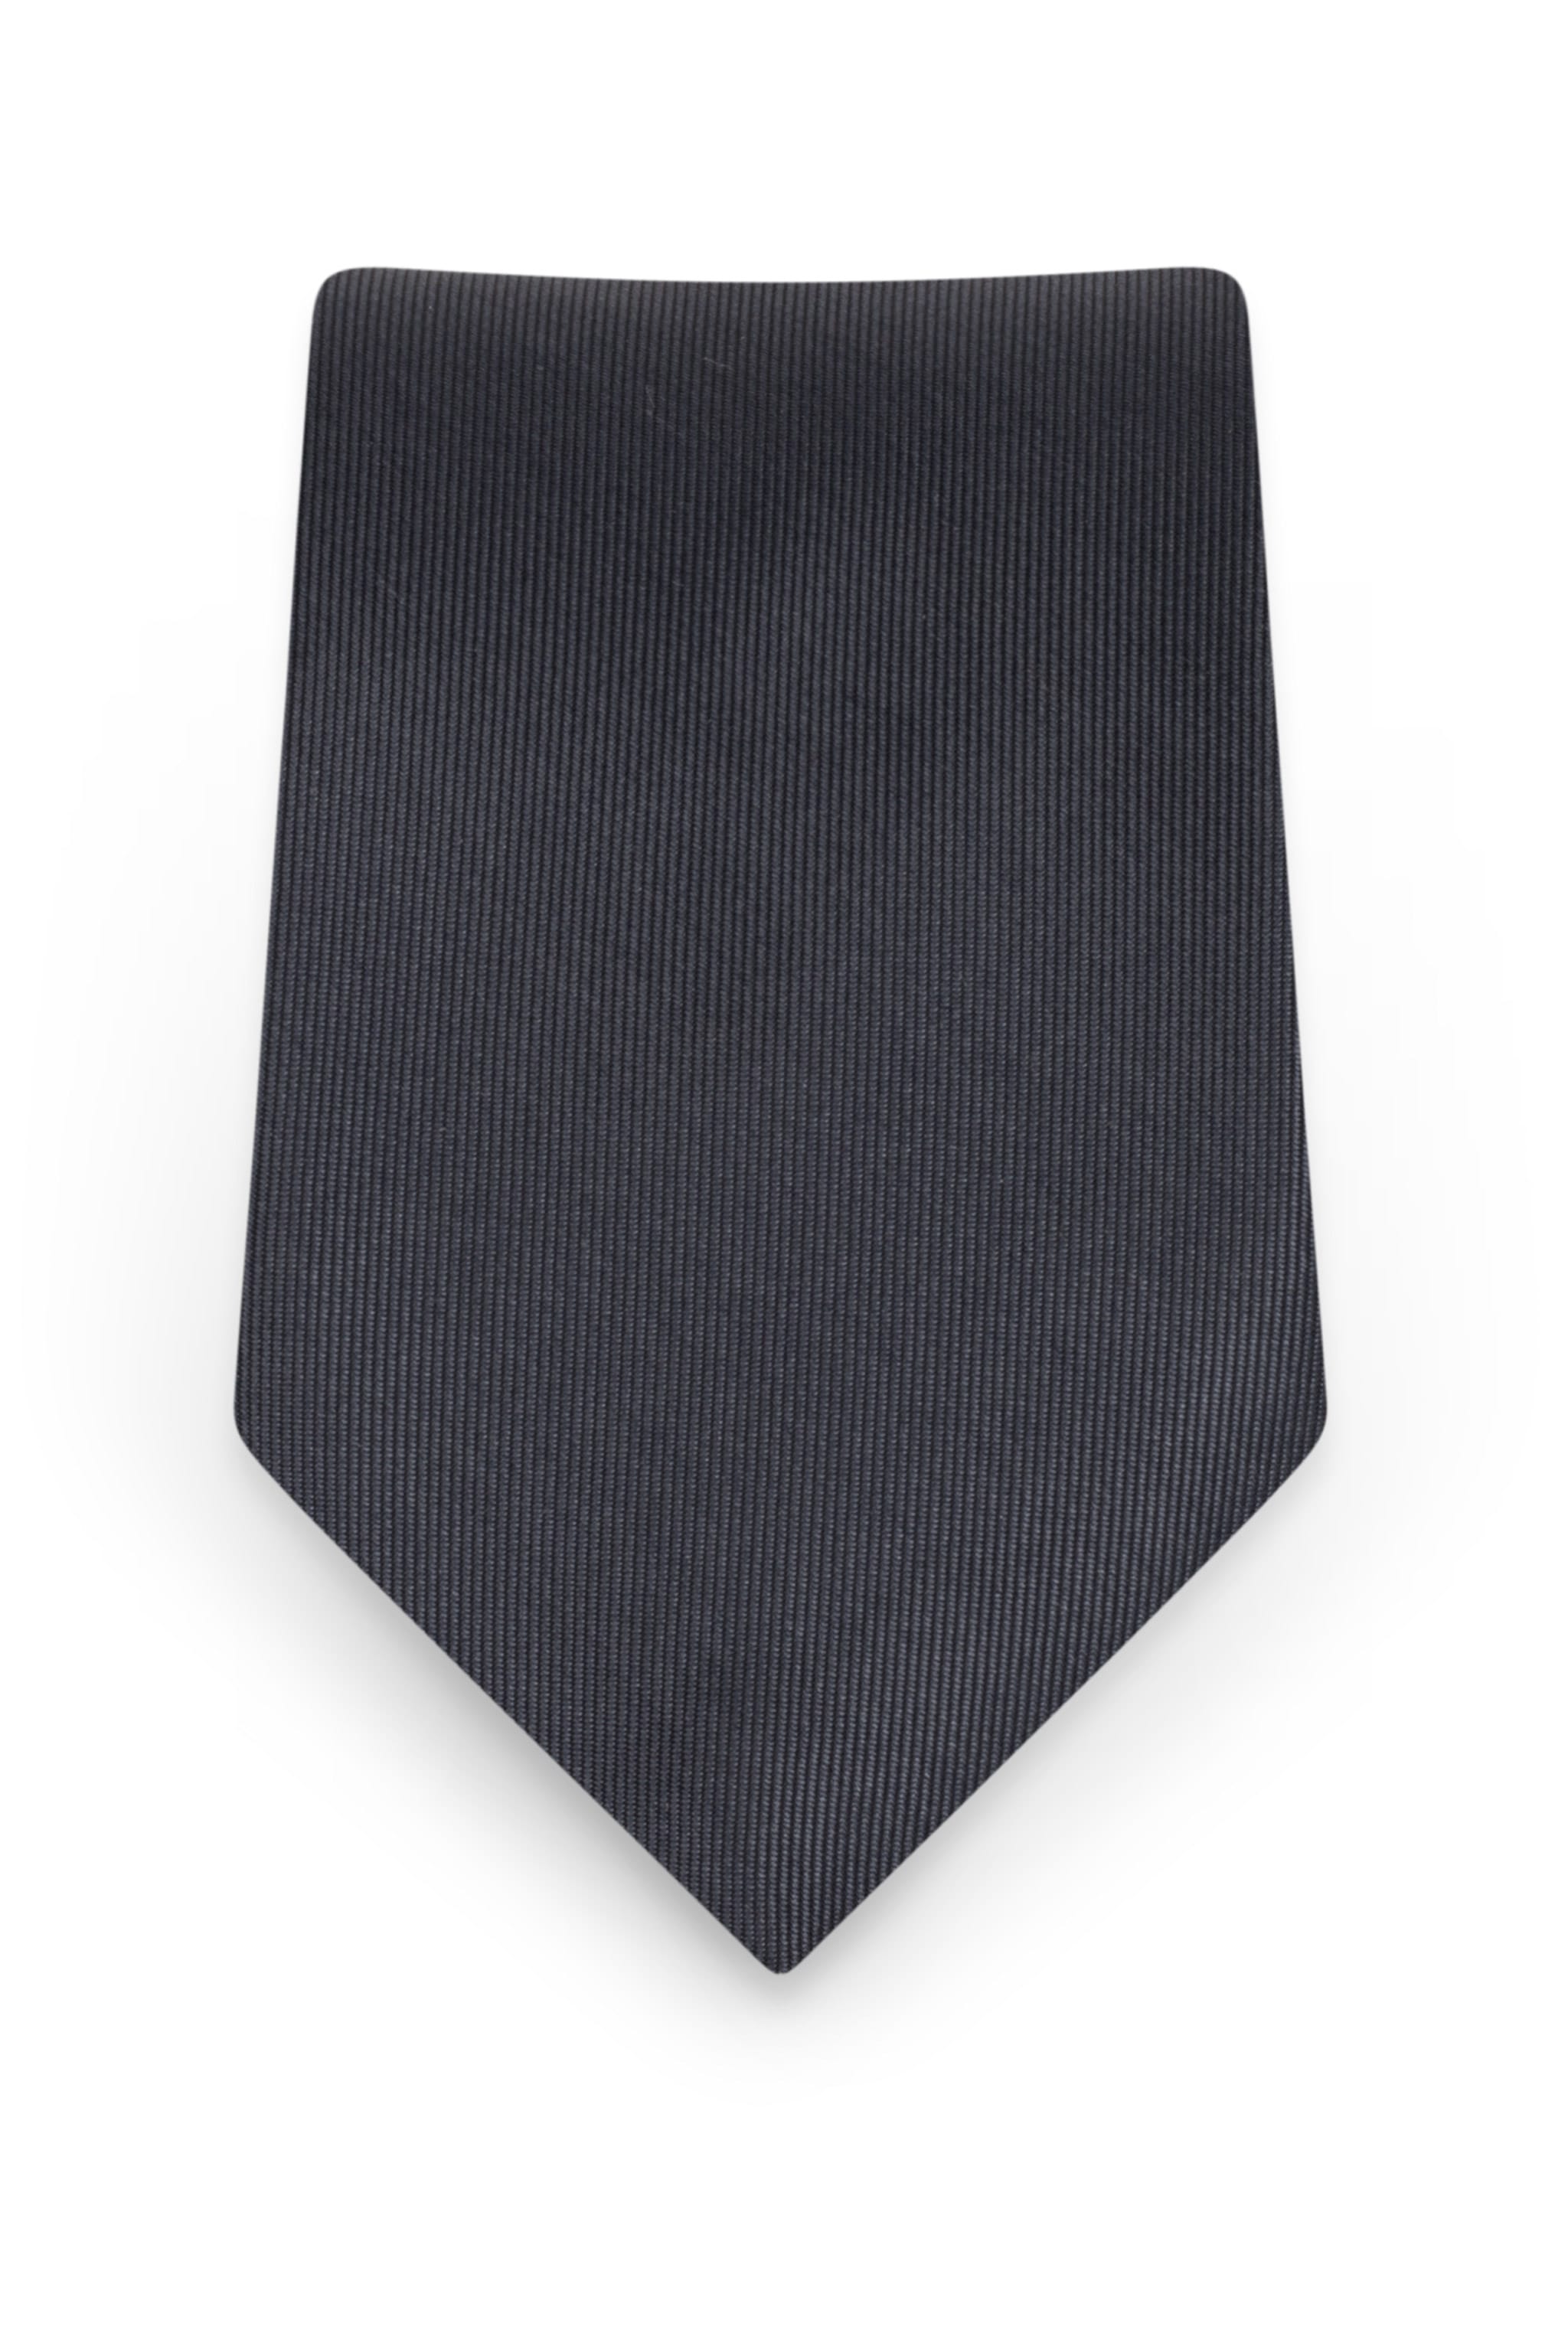 Solid Charcoal Self-Tie Windsor Tie